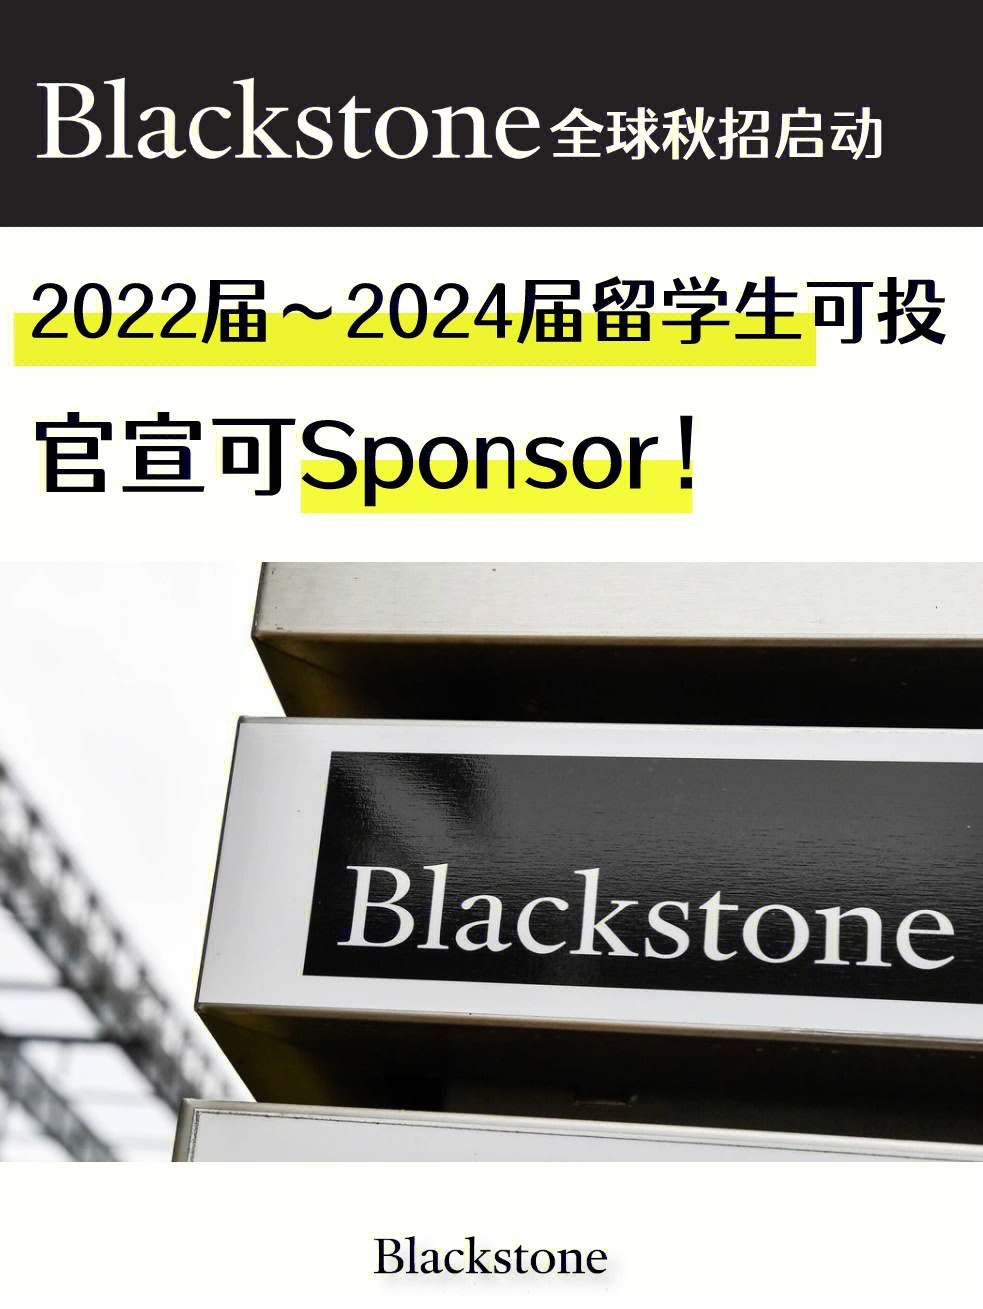 好消息 191blackstone开放了全球秋招2022届